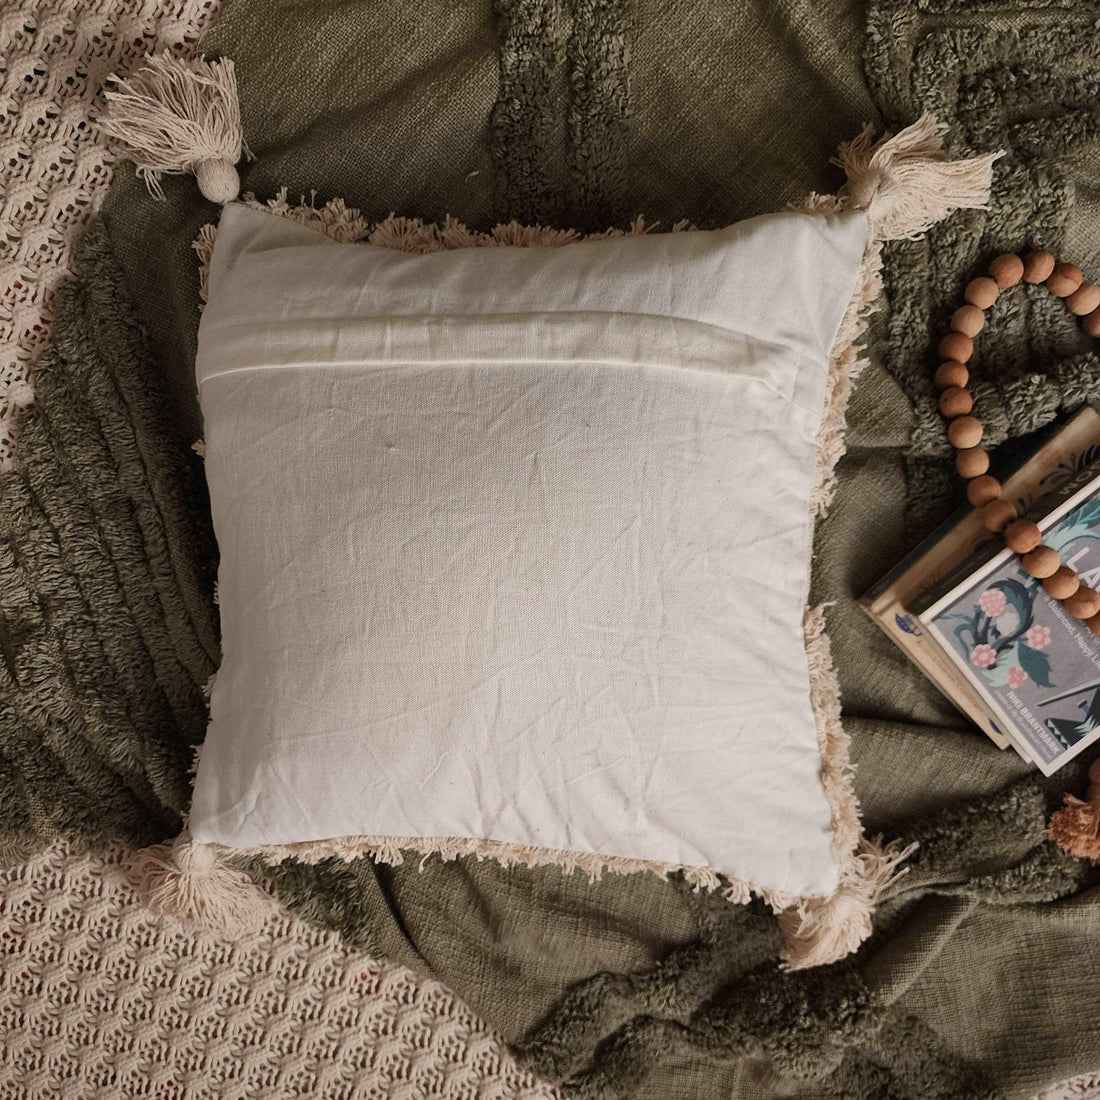 Amanda Tufted Pillow